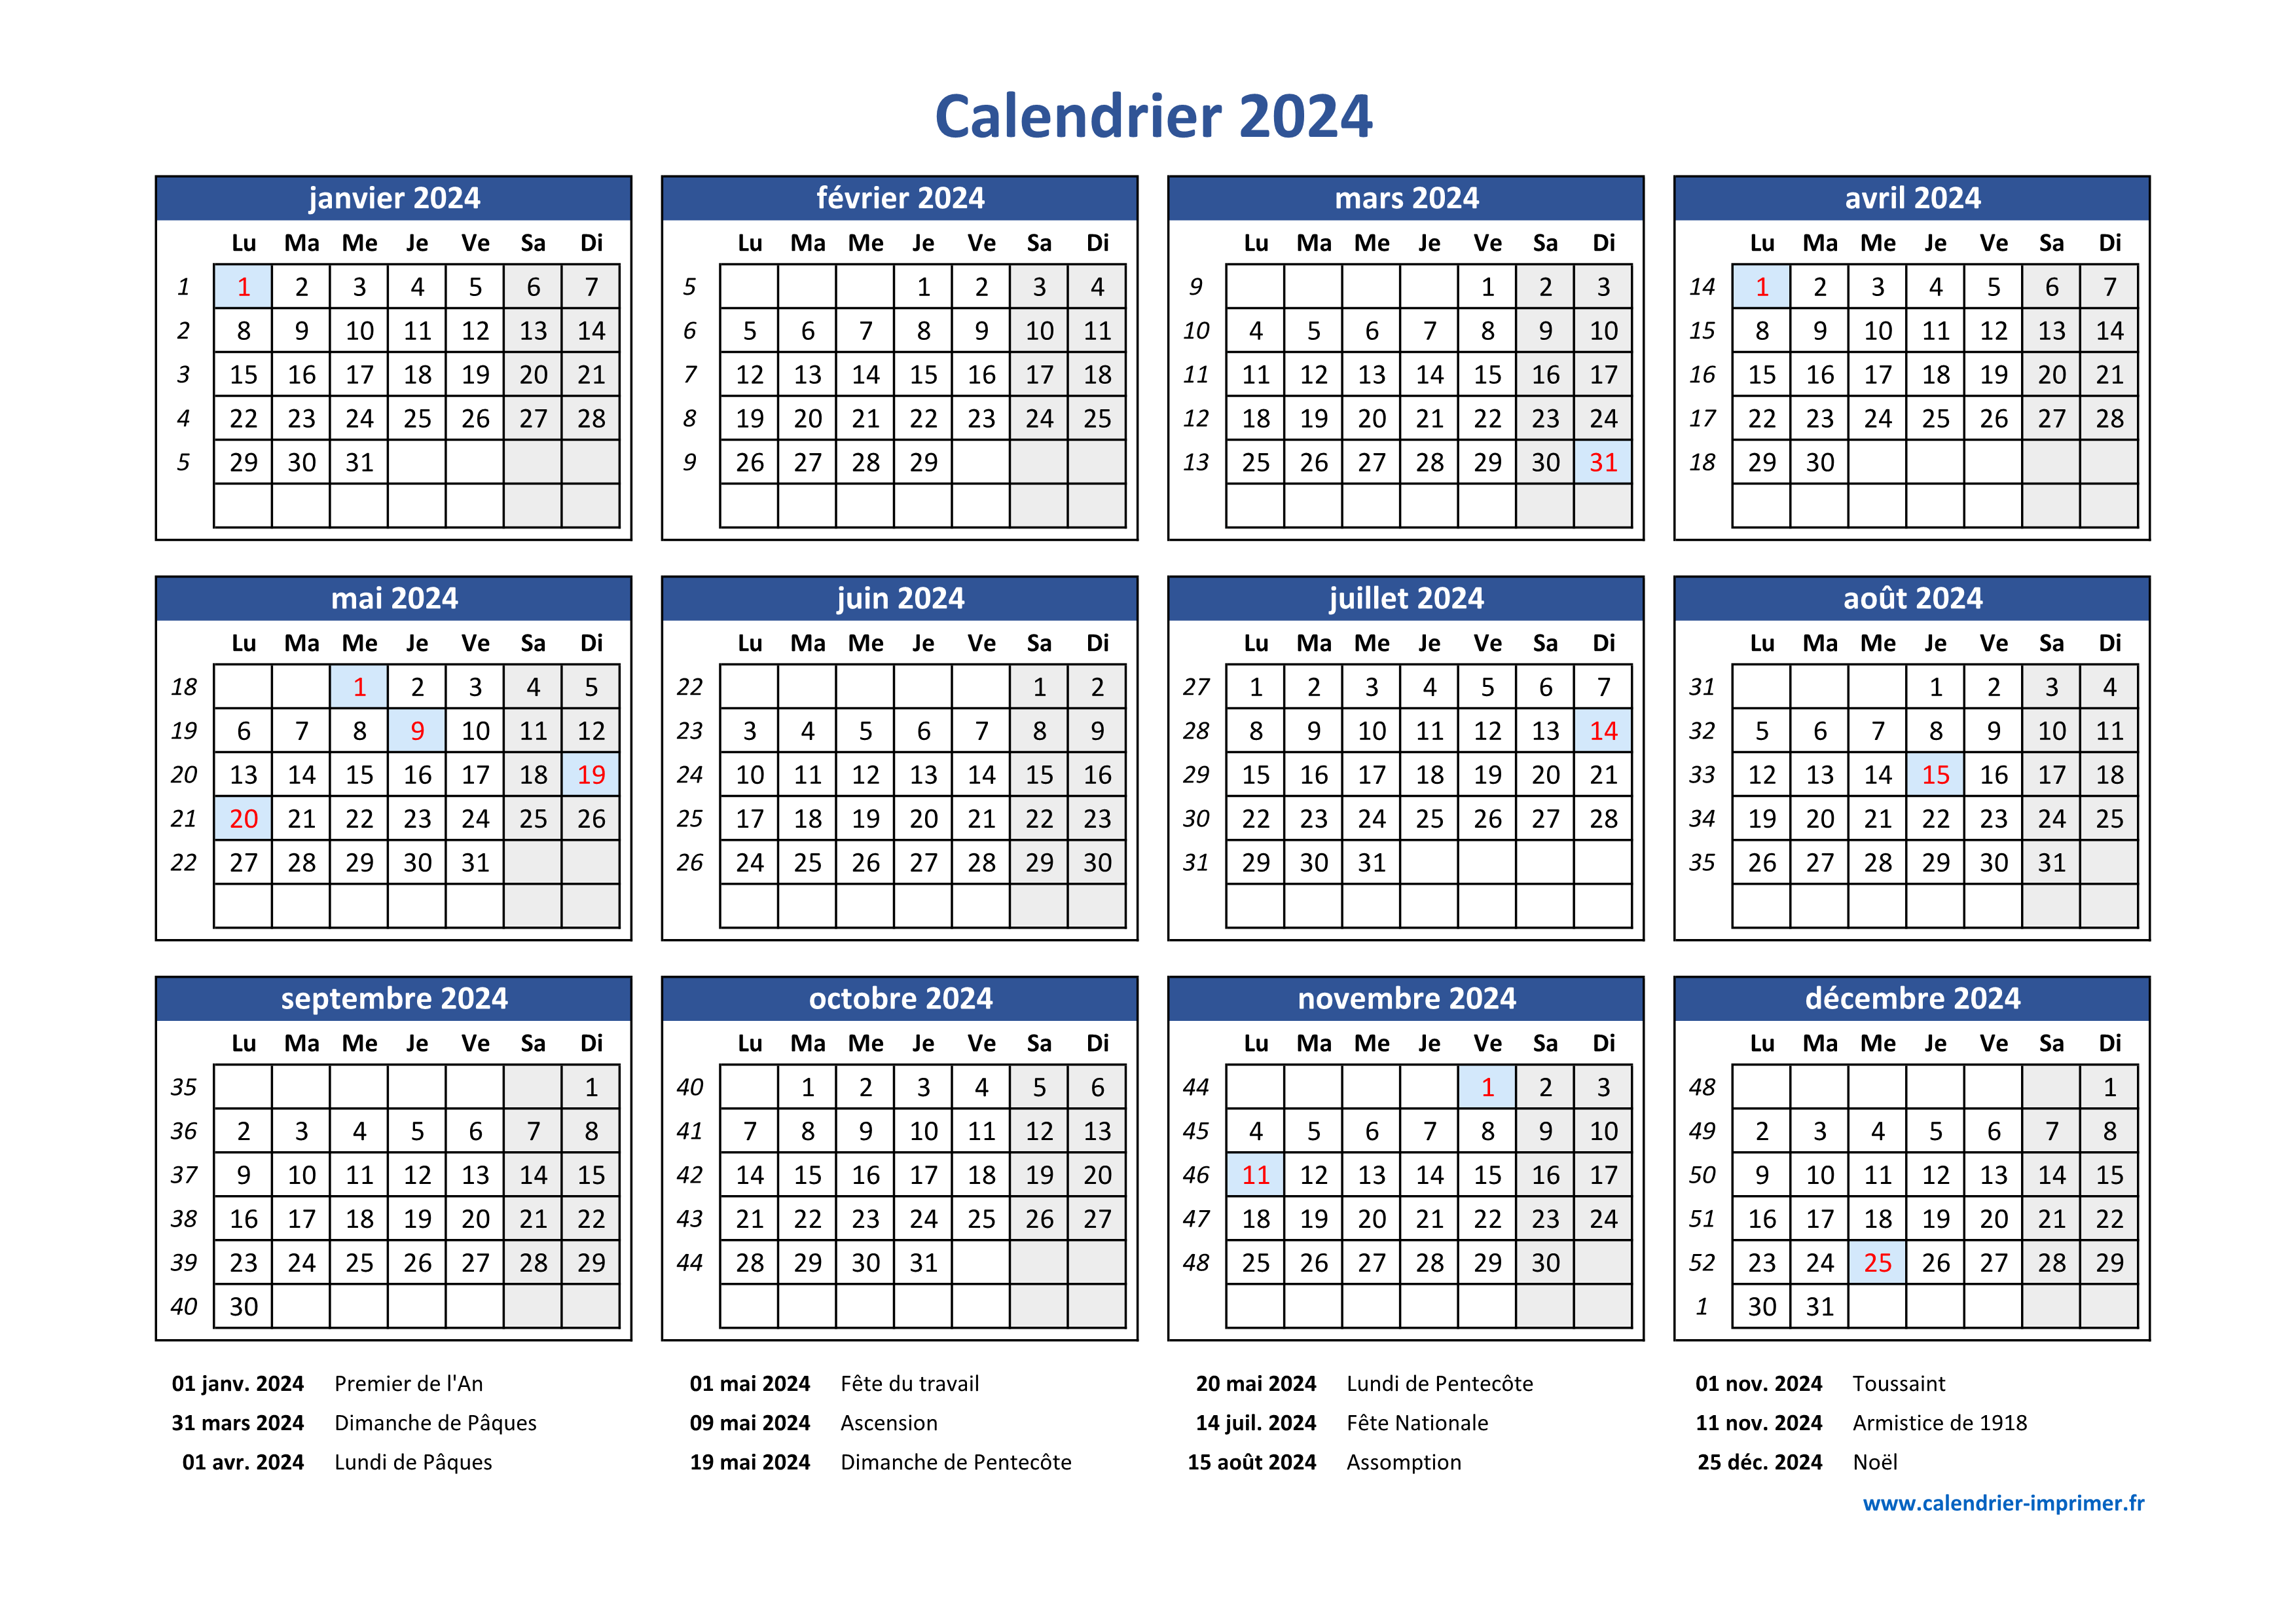 Calendrier 2024 - calendrier mural 2024 affichage du calendrier mural 3 mois  (plié en